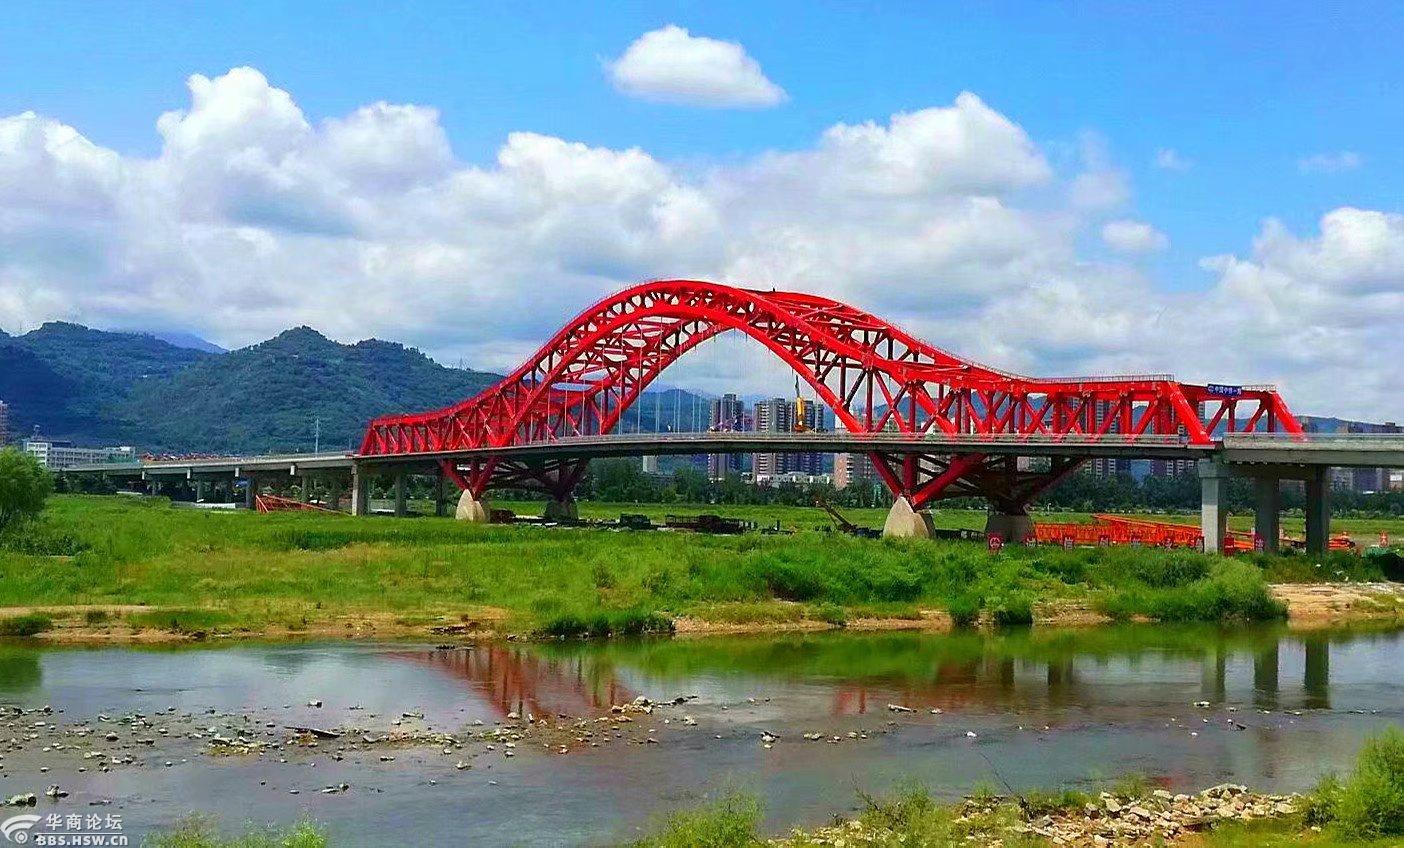 宝鸡的桥主要是横跨渭河的,目前宝鸡在建或已在使用中的桥有:福谭大桥